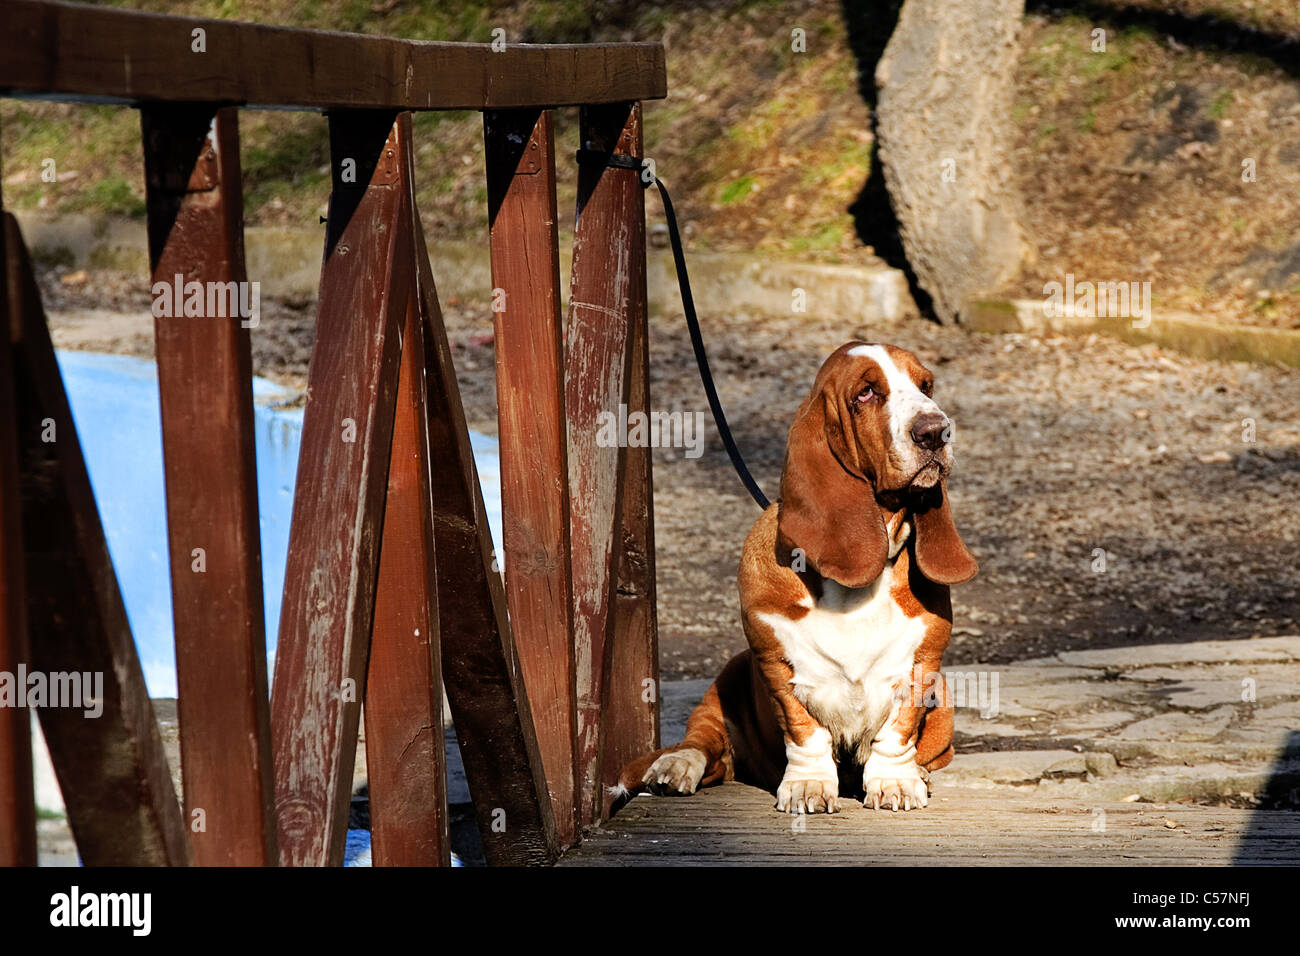 sad dog, basset hound on wooden bridge Stock Photo